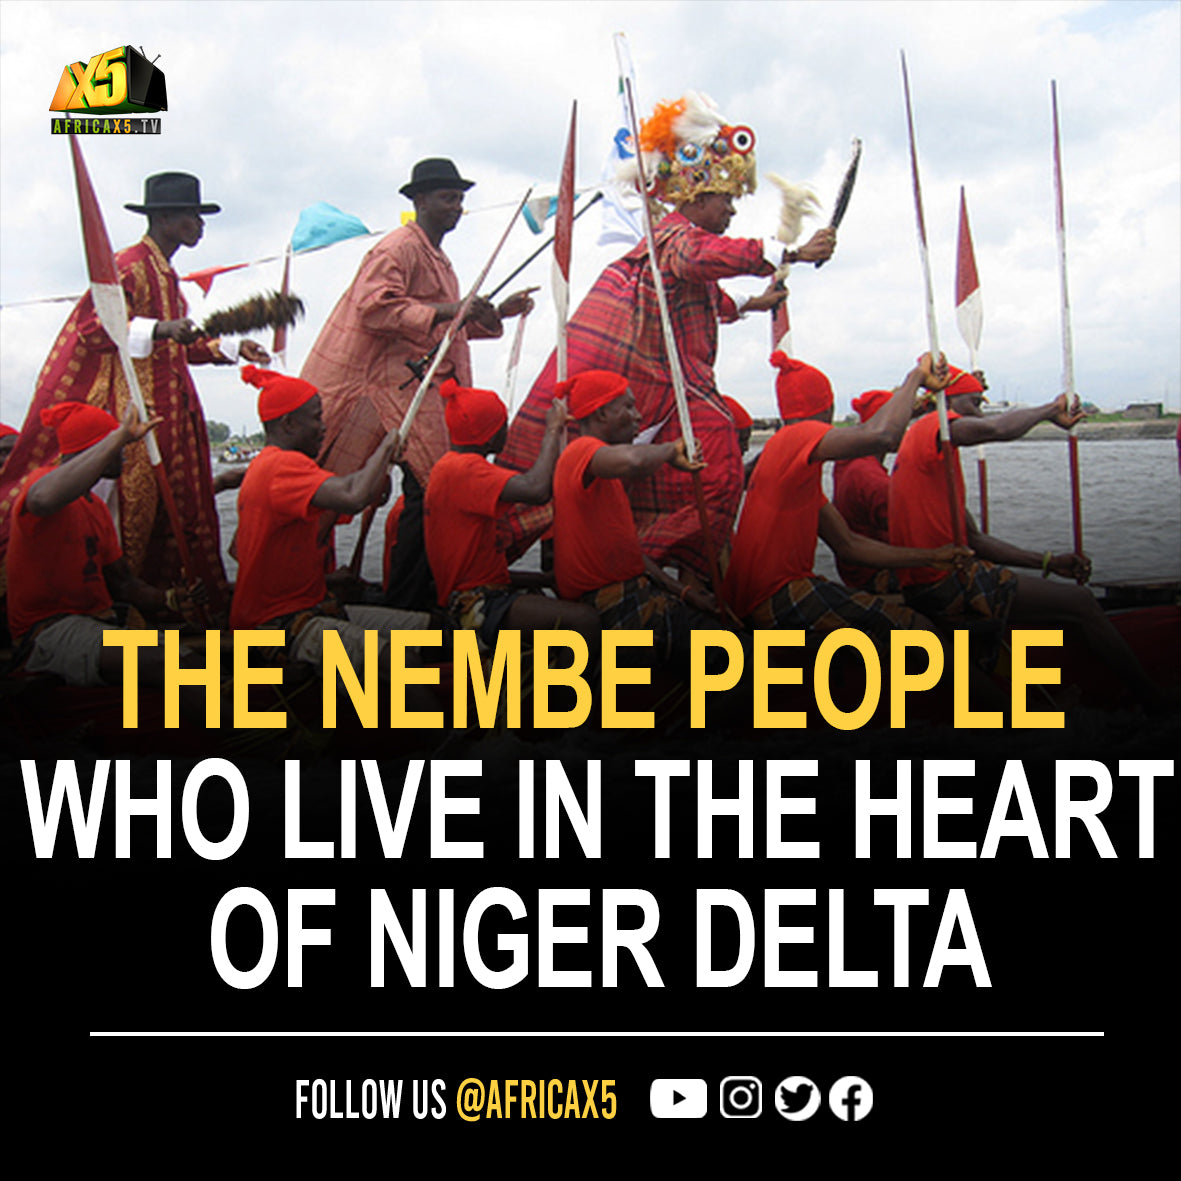 The Nembe people